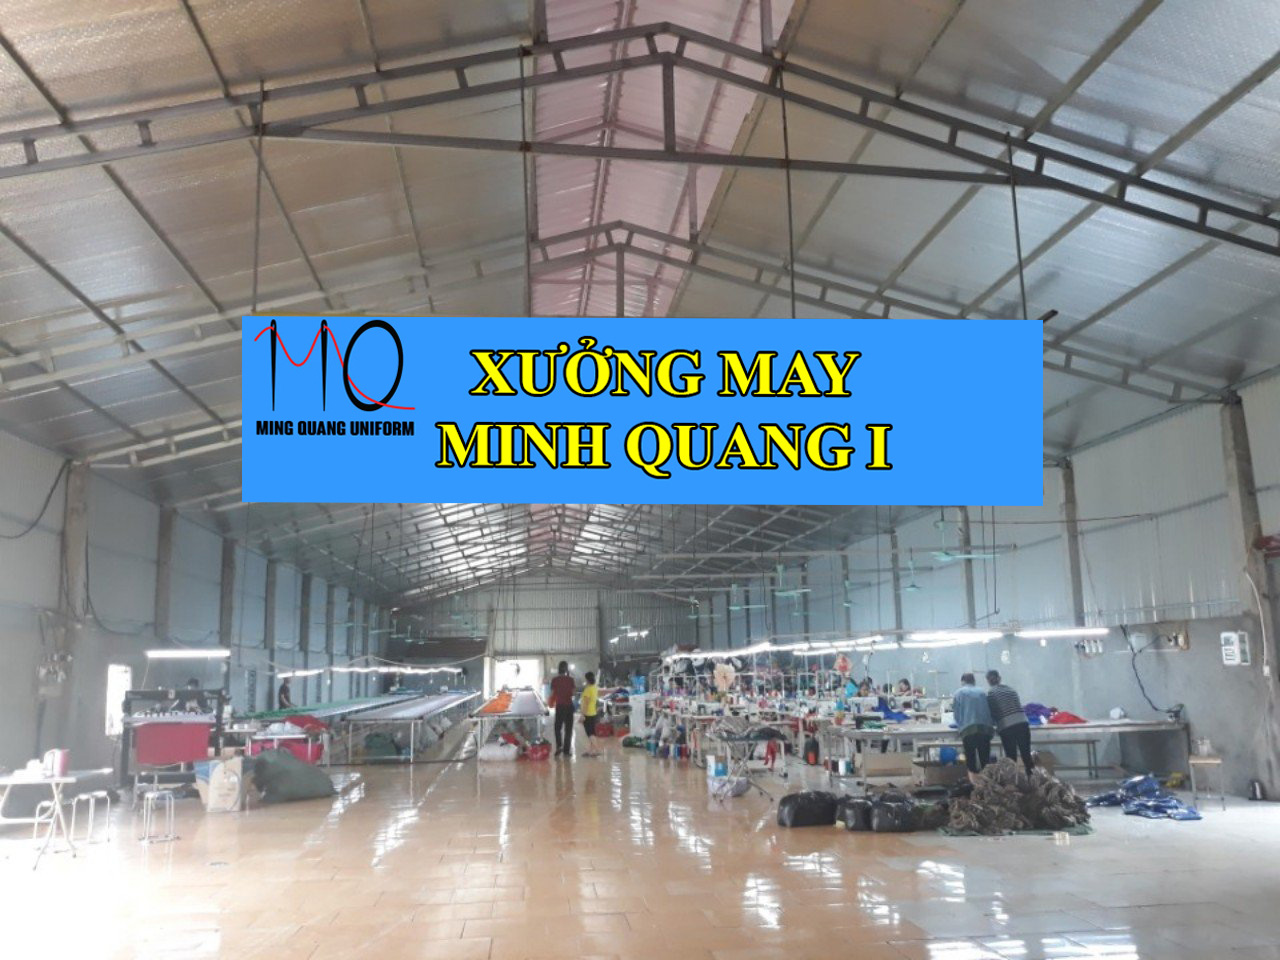 Xưởng sản xuất Minh Quang